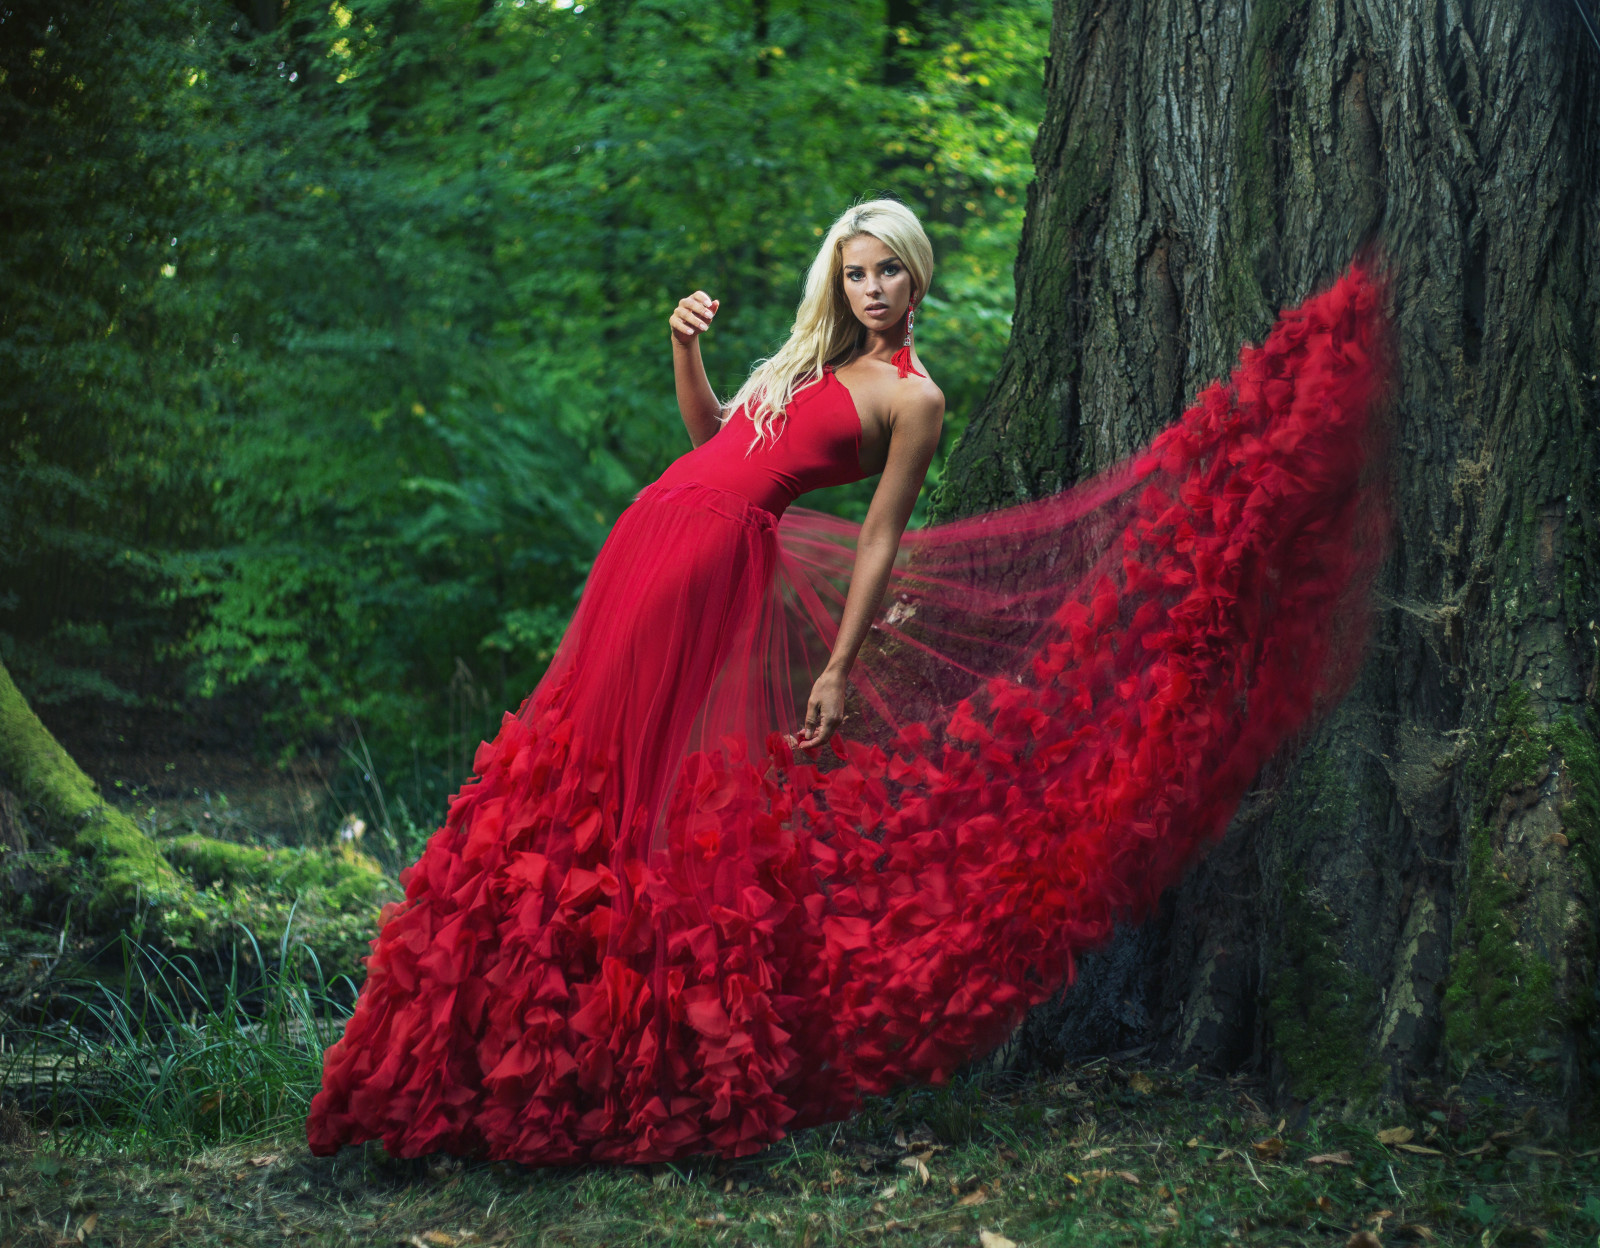 pohon, pose, model, gaun, gaun merah